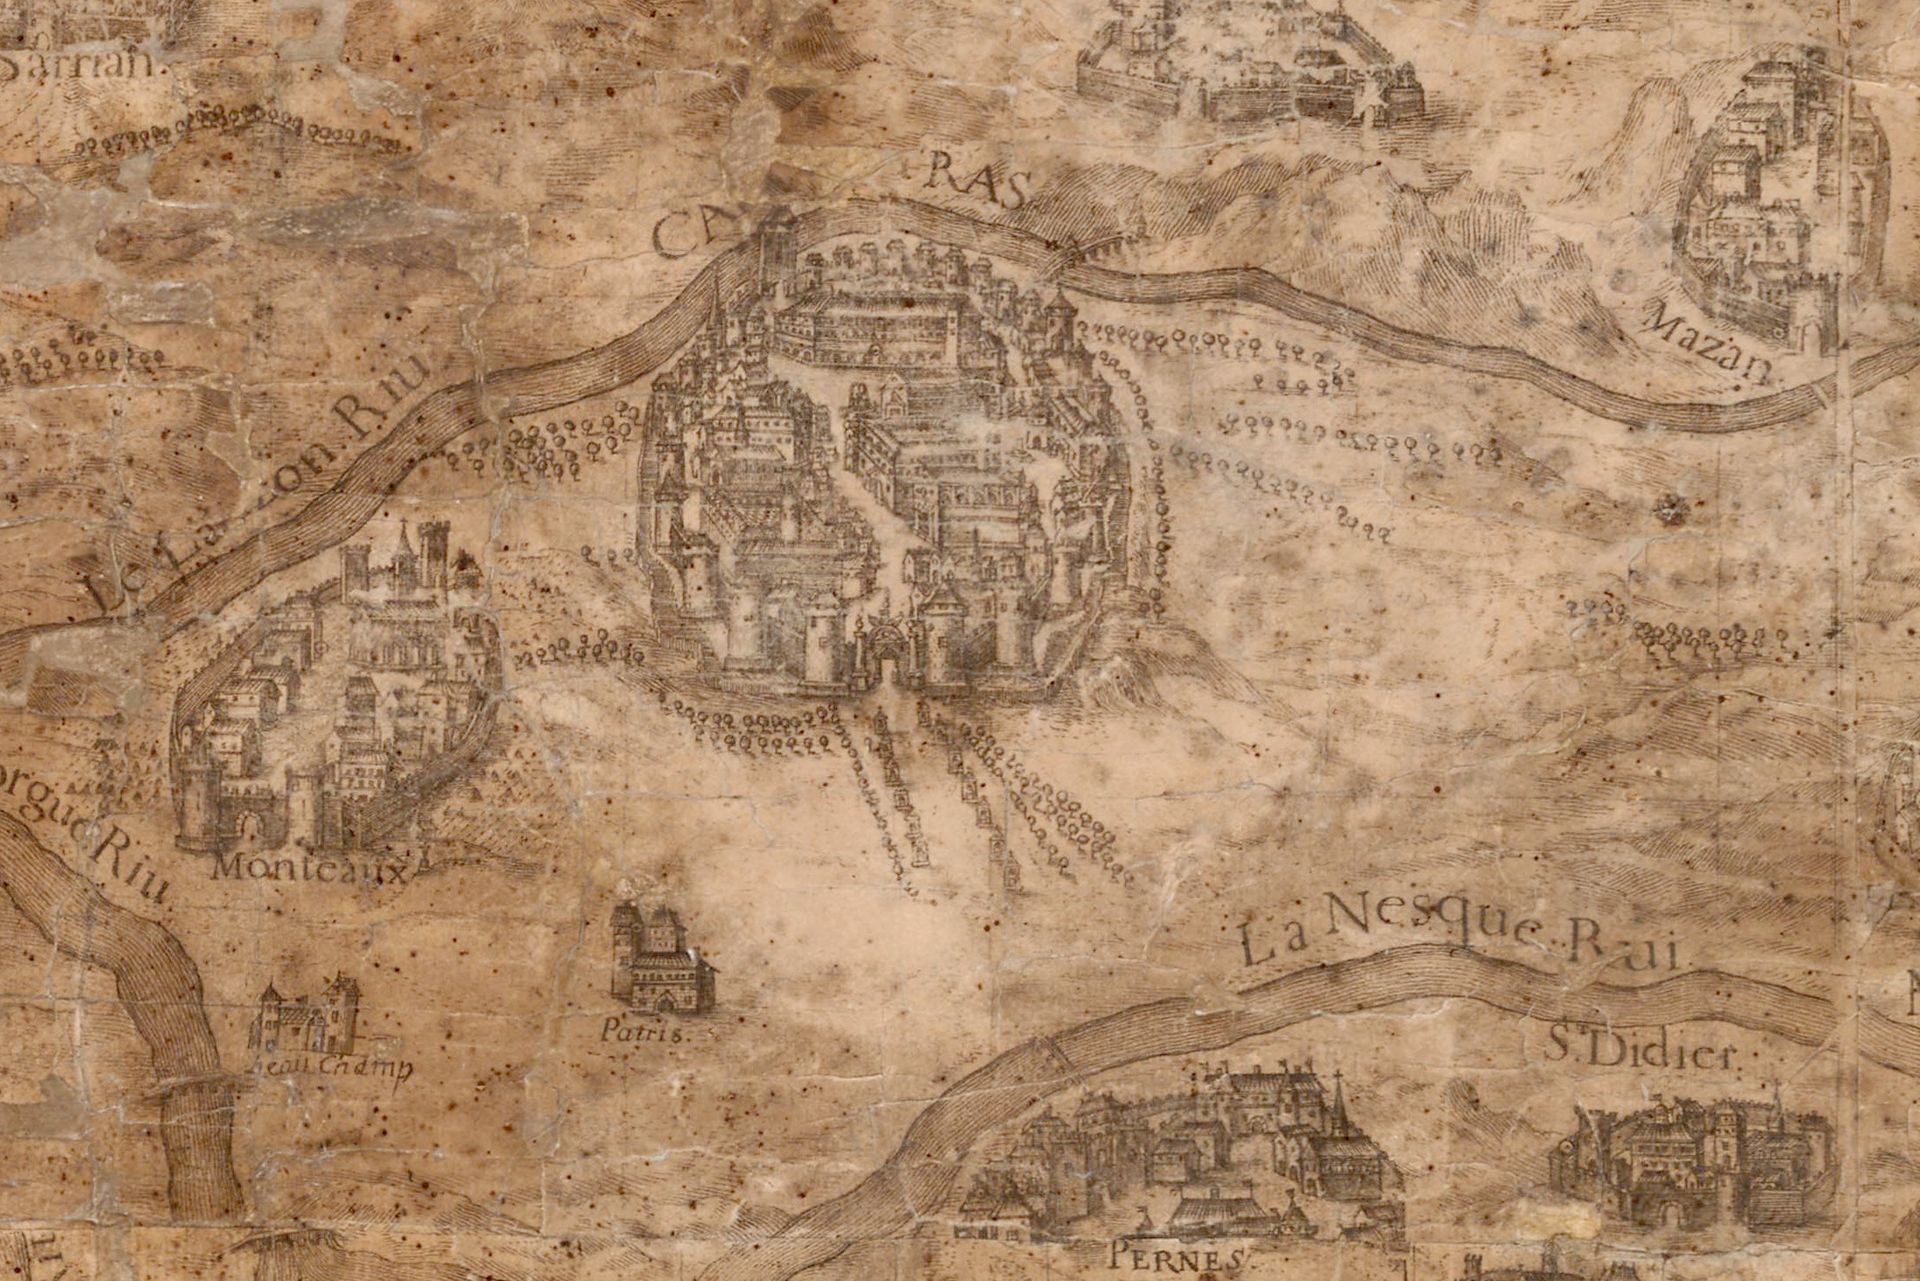 Carte du Comtat Venaissin par le R.P. Bonfa, de la Compagnie de Jésus, professeur de mathématiques à Avignon. Dessinée et gravée par Louis David en 1696 (AD Vaucluse 1 Fi Comtat Venaissin 3)